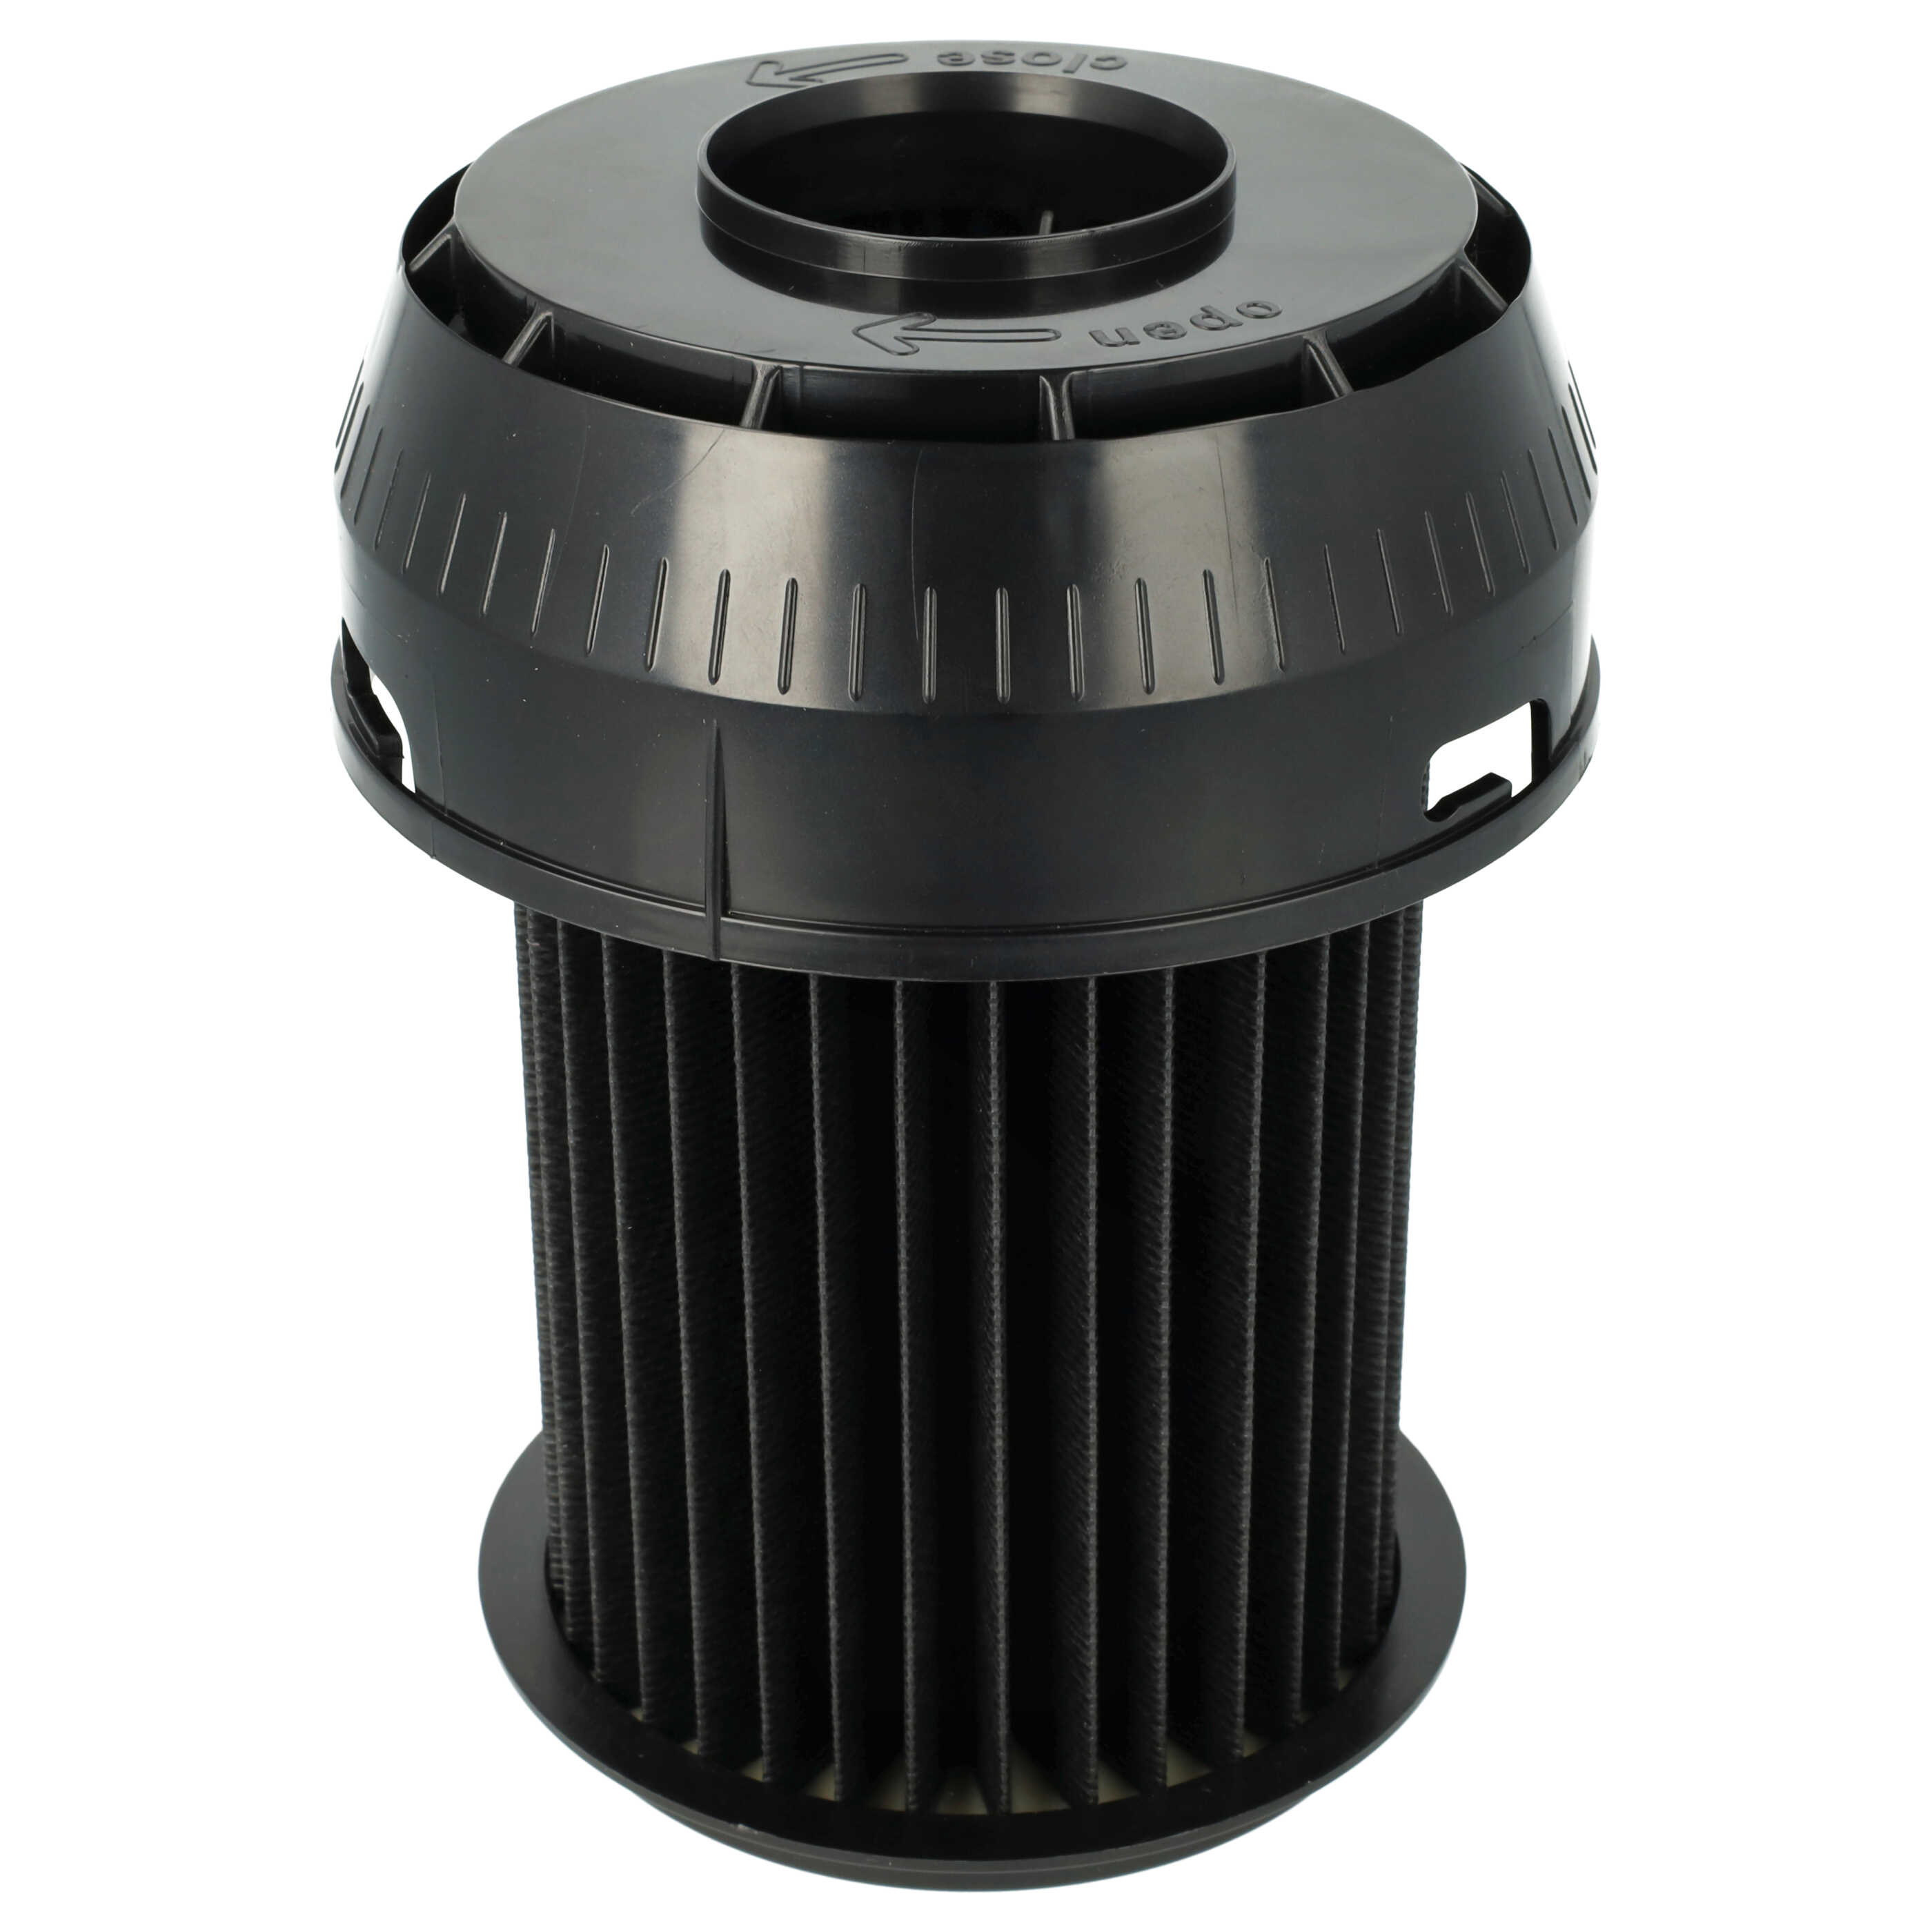 Filtr do odkurzacza Bosch zamiennik Bosch 2609256d46, 00649841 - filtr lamelowy, czarny